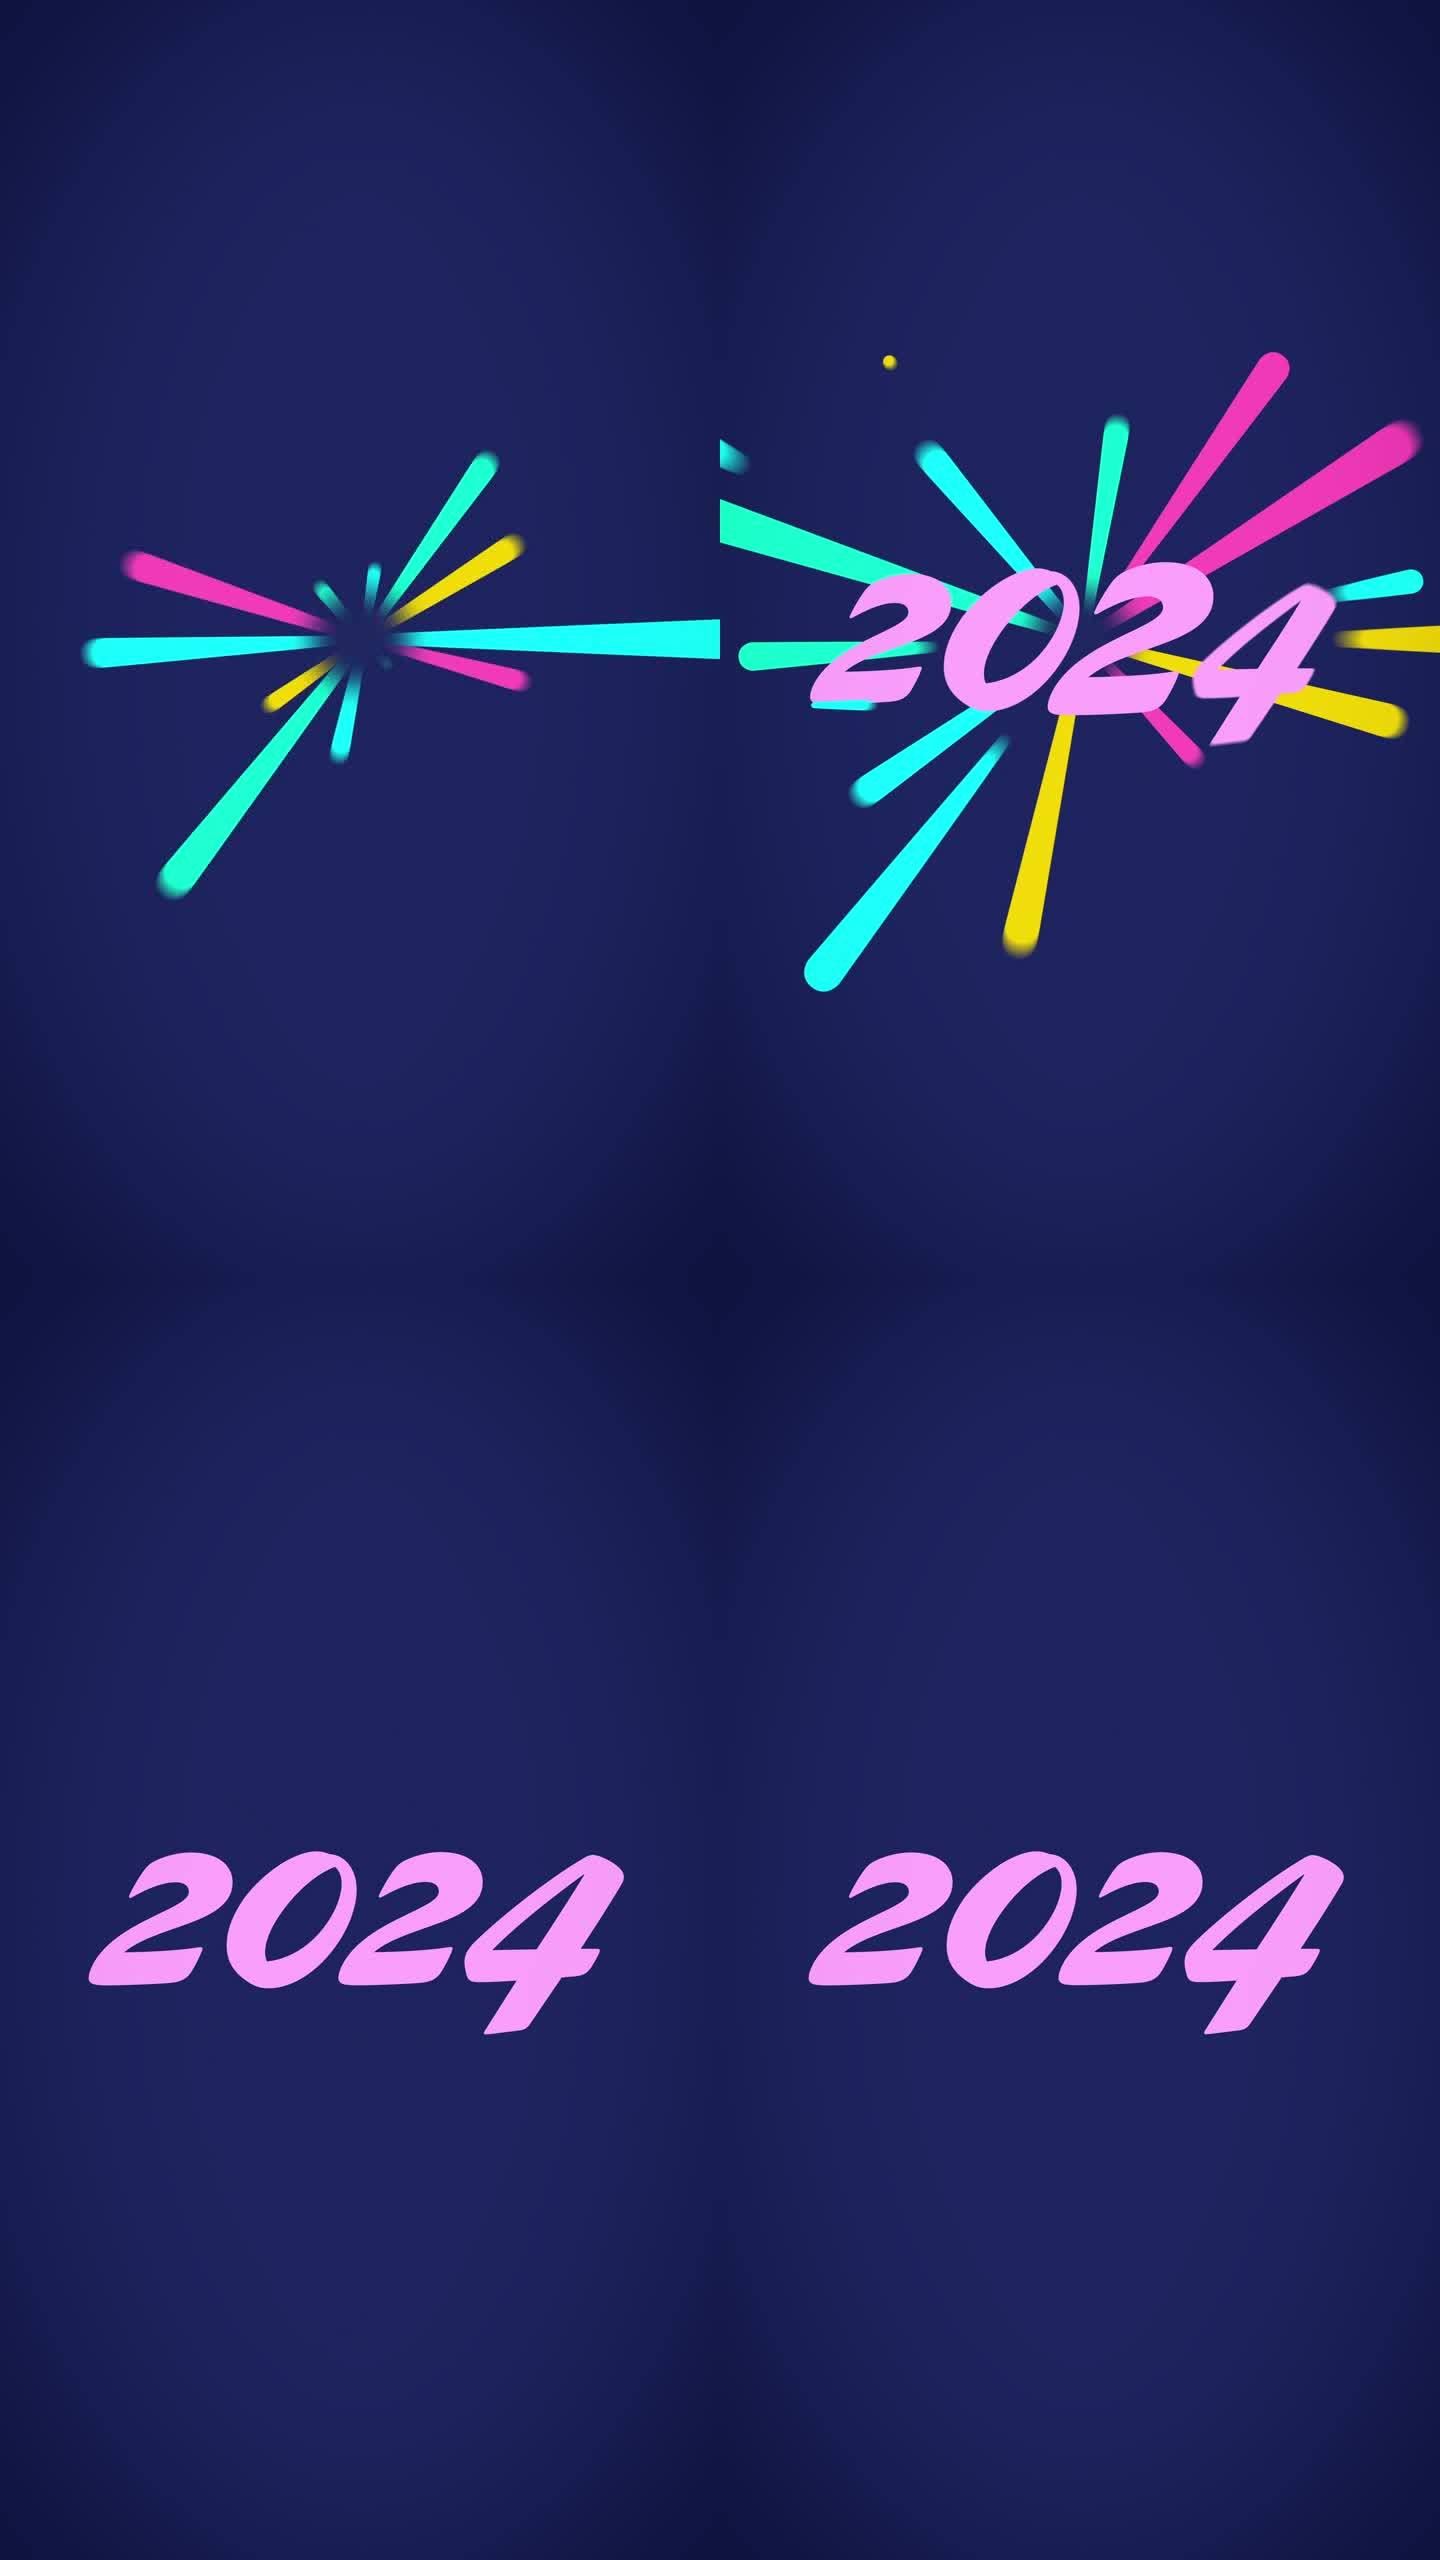 垂直视频-新年2022动画-现代趋势调色板